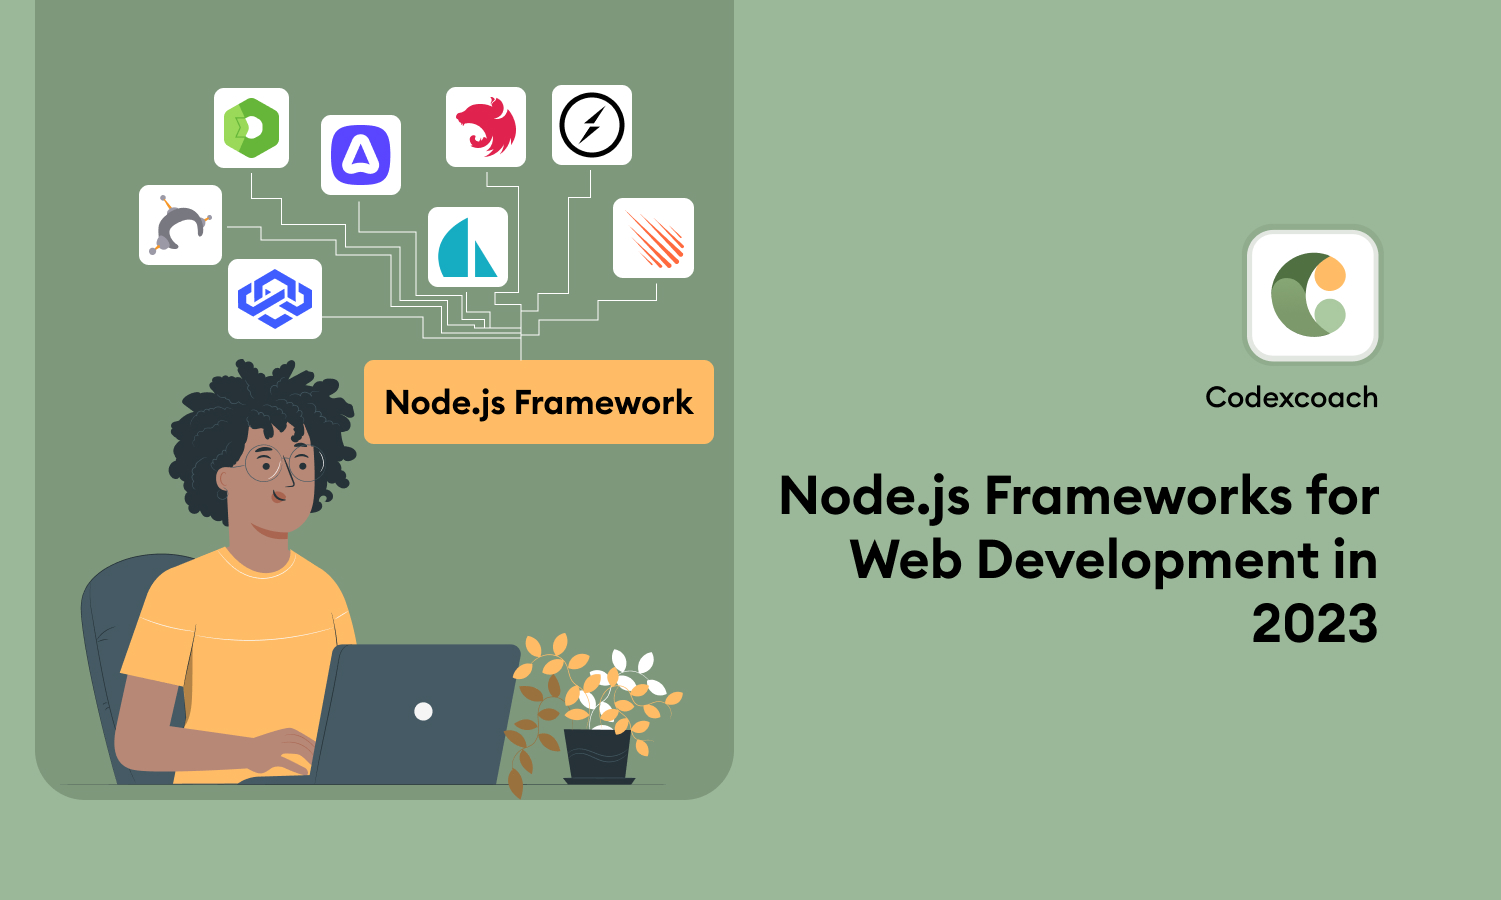 Node.js Frameworks for Web Development in 2023